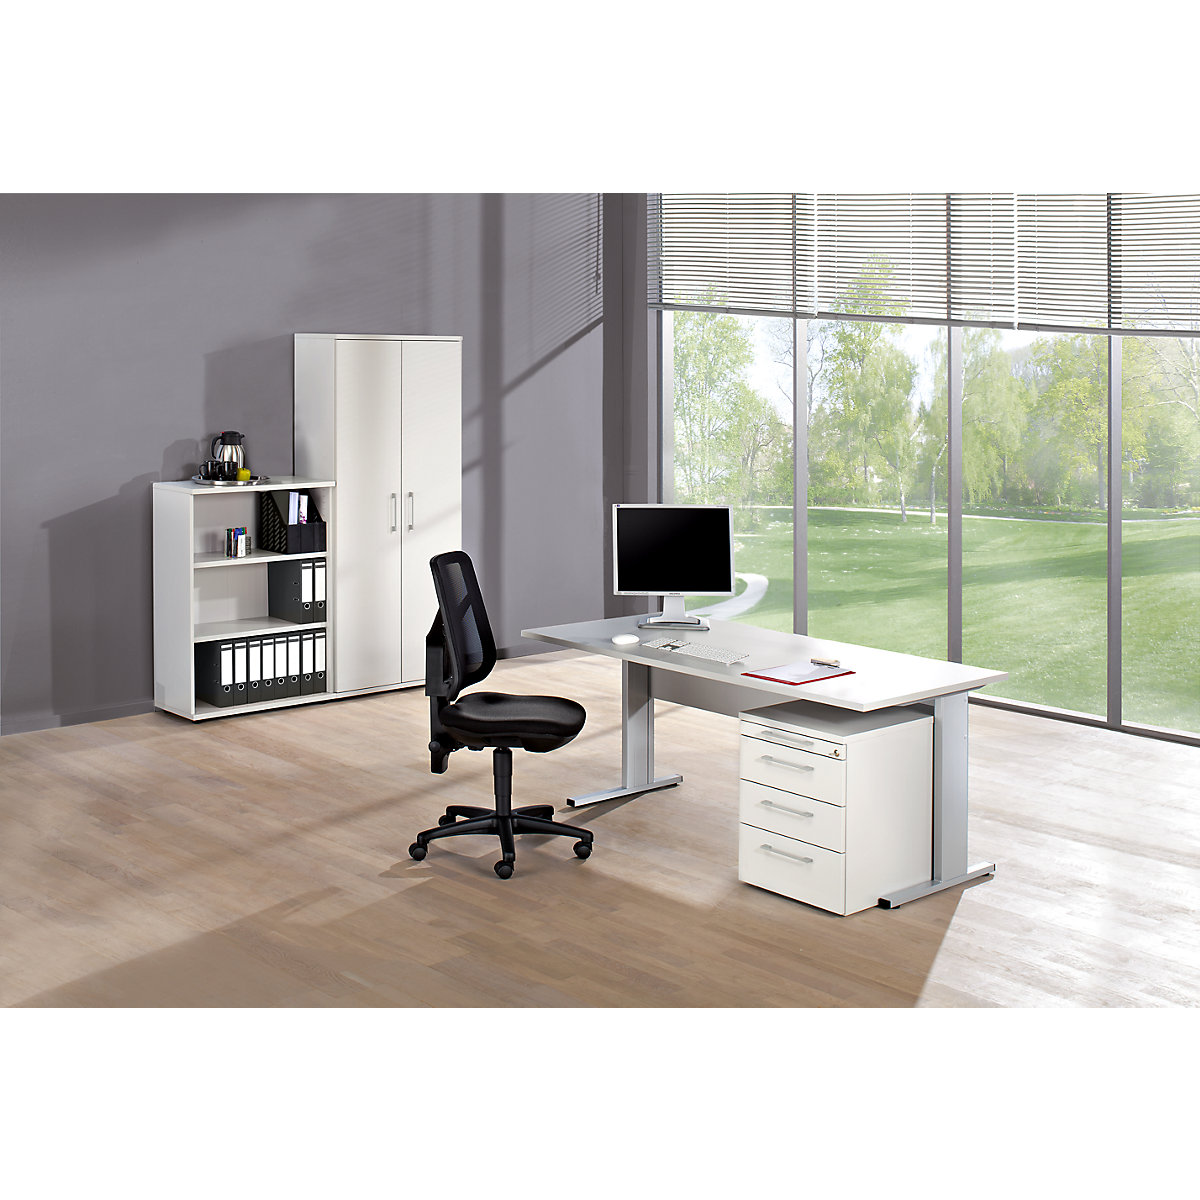 Ufficio completo PETRA, sedia girevole per ufficio inclusa, grigio chiaro-3